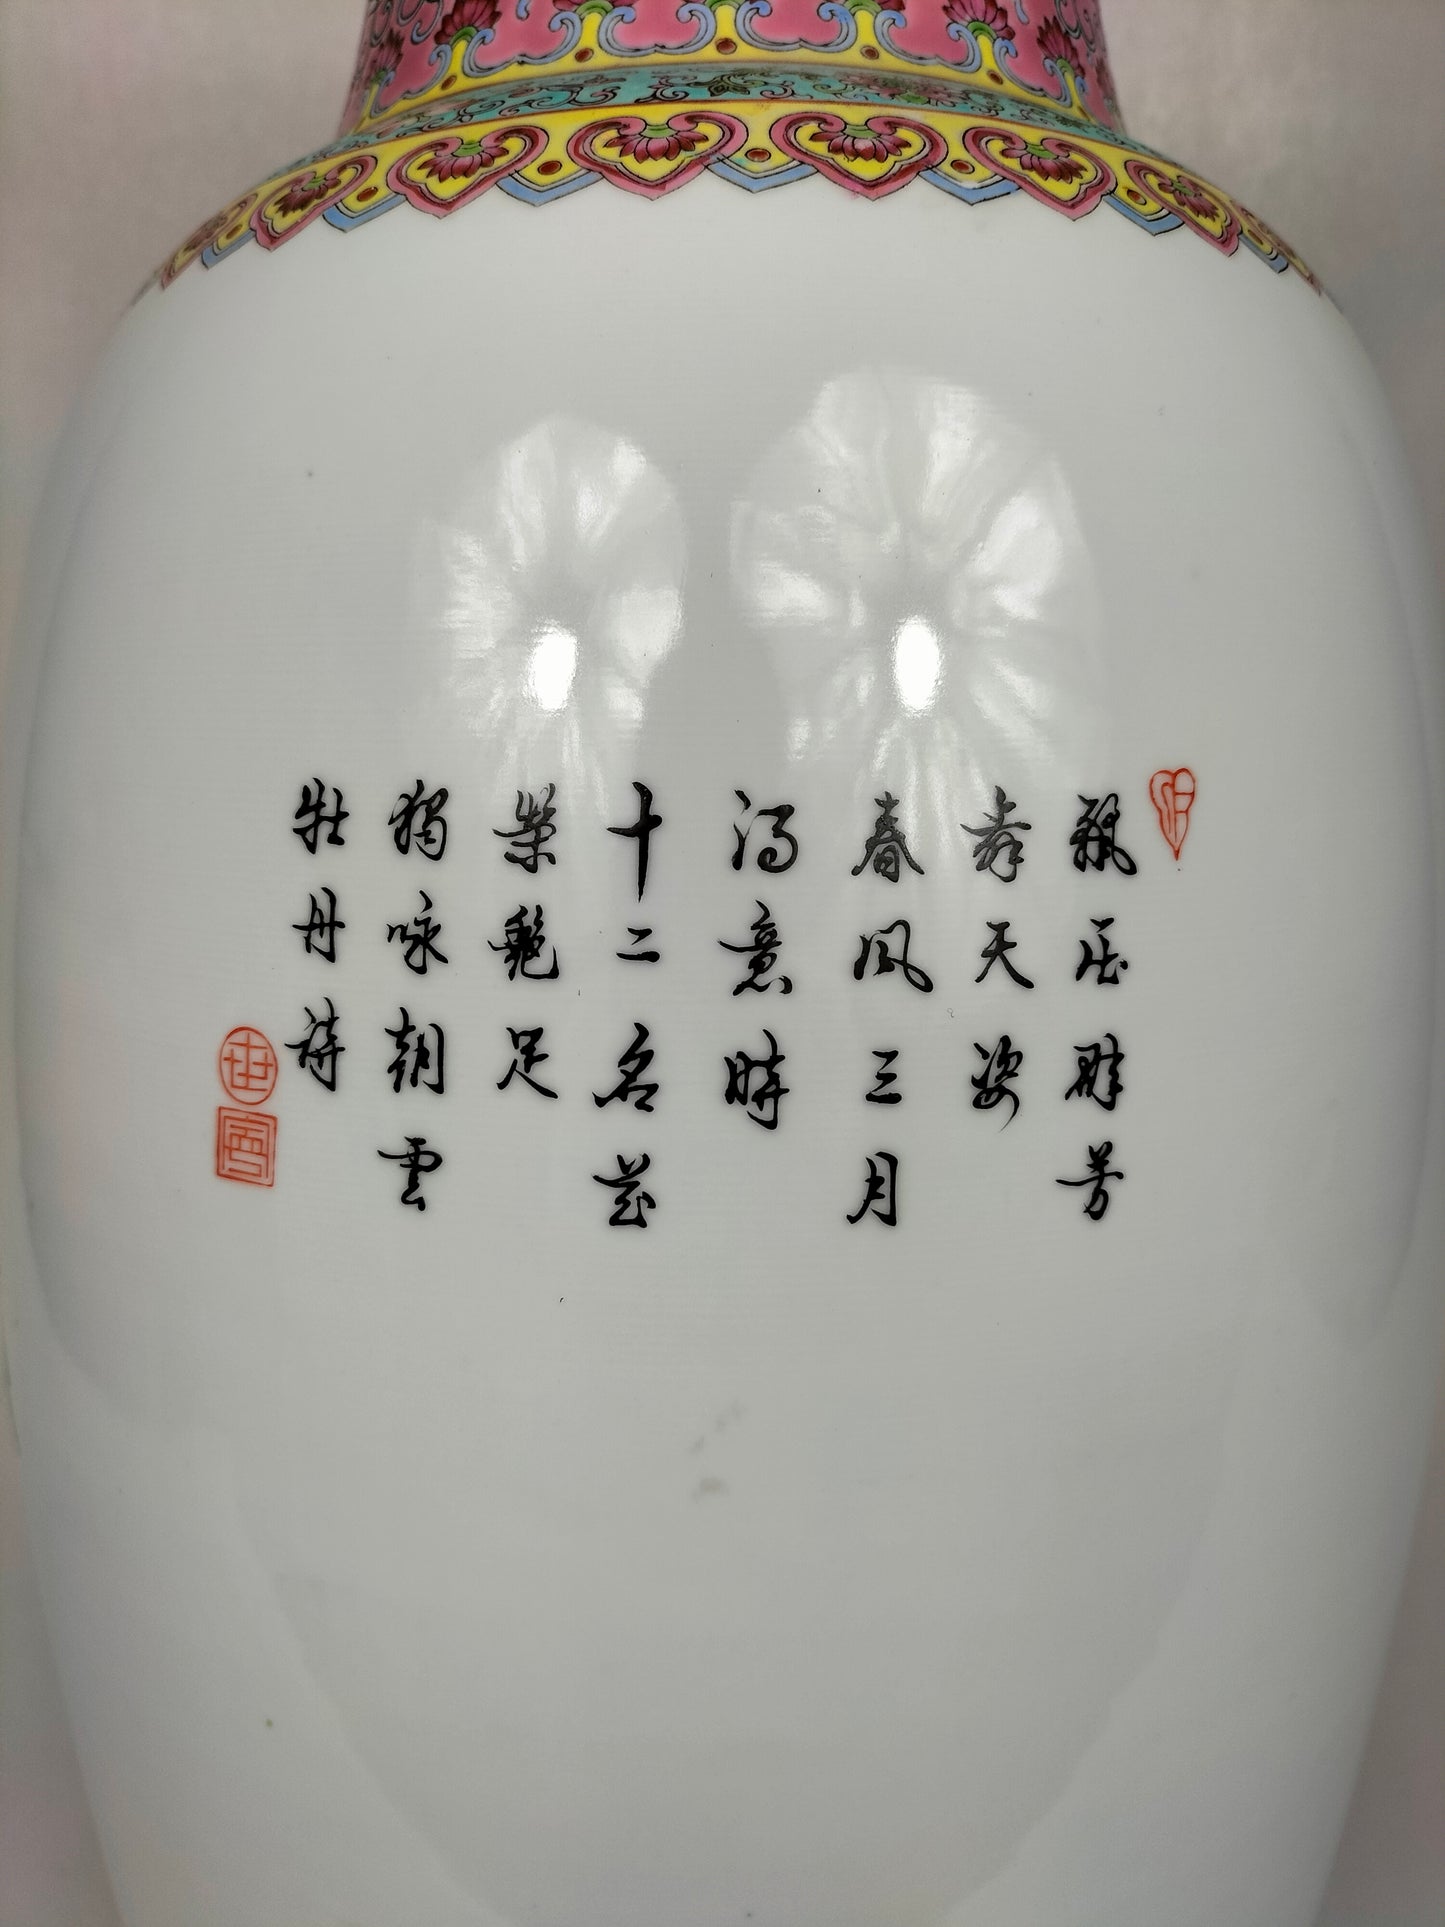 Grande vaso chinês da família rosa decorado com flores // Jingdezhen - século XX